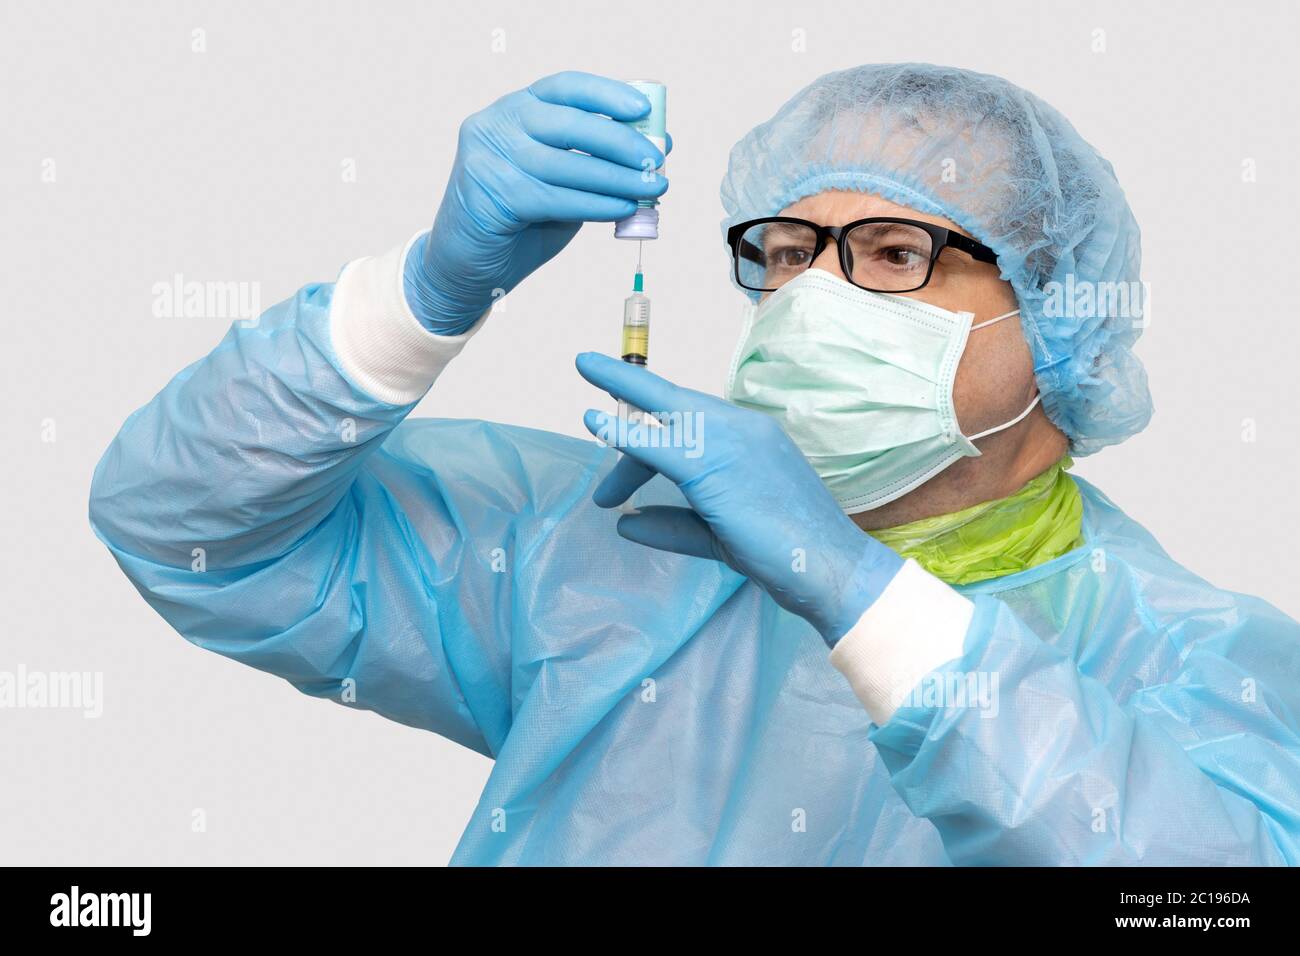 Le médecin prend le médicament d'une bouteille à une injection, sur fond blanc. Scientifique tenant une seringue et un vaccin. Banque D'Images